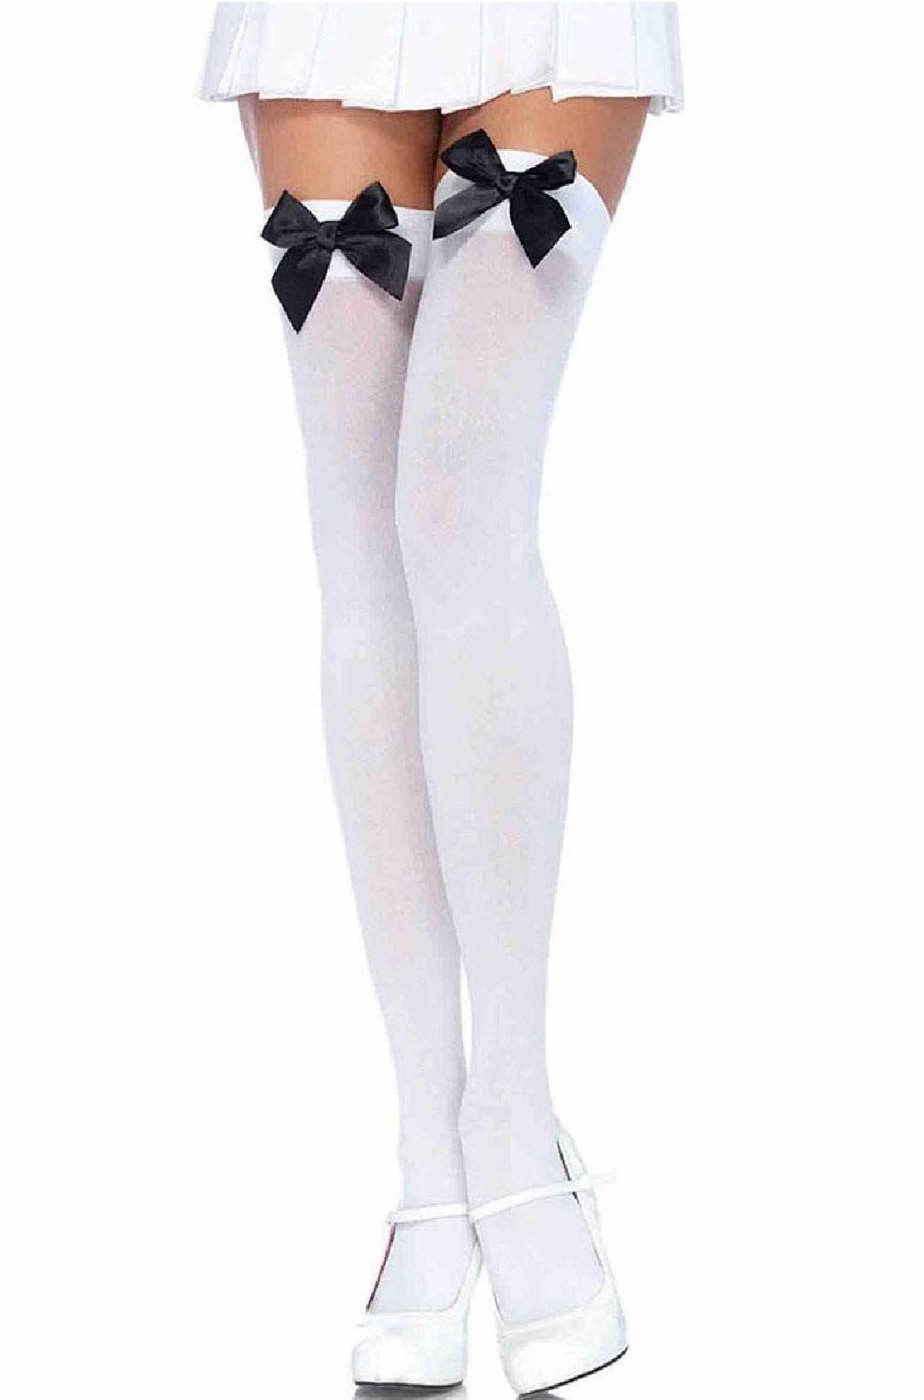 Calze da donna autoreggenti bianche con fiocco nero 